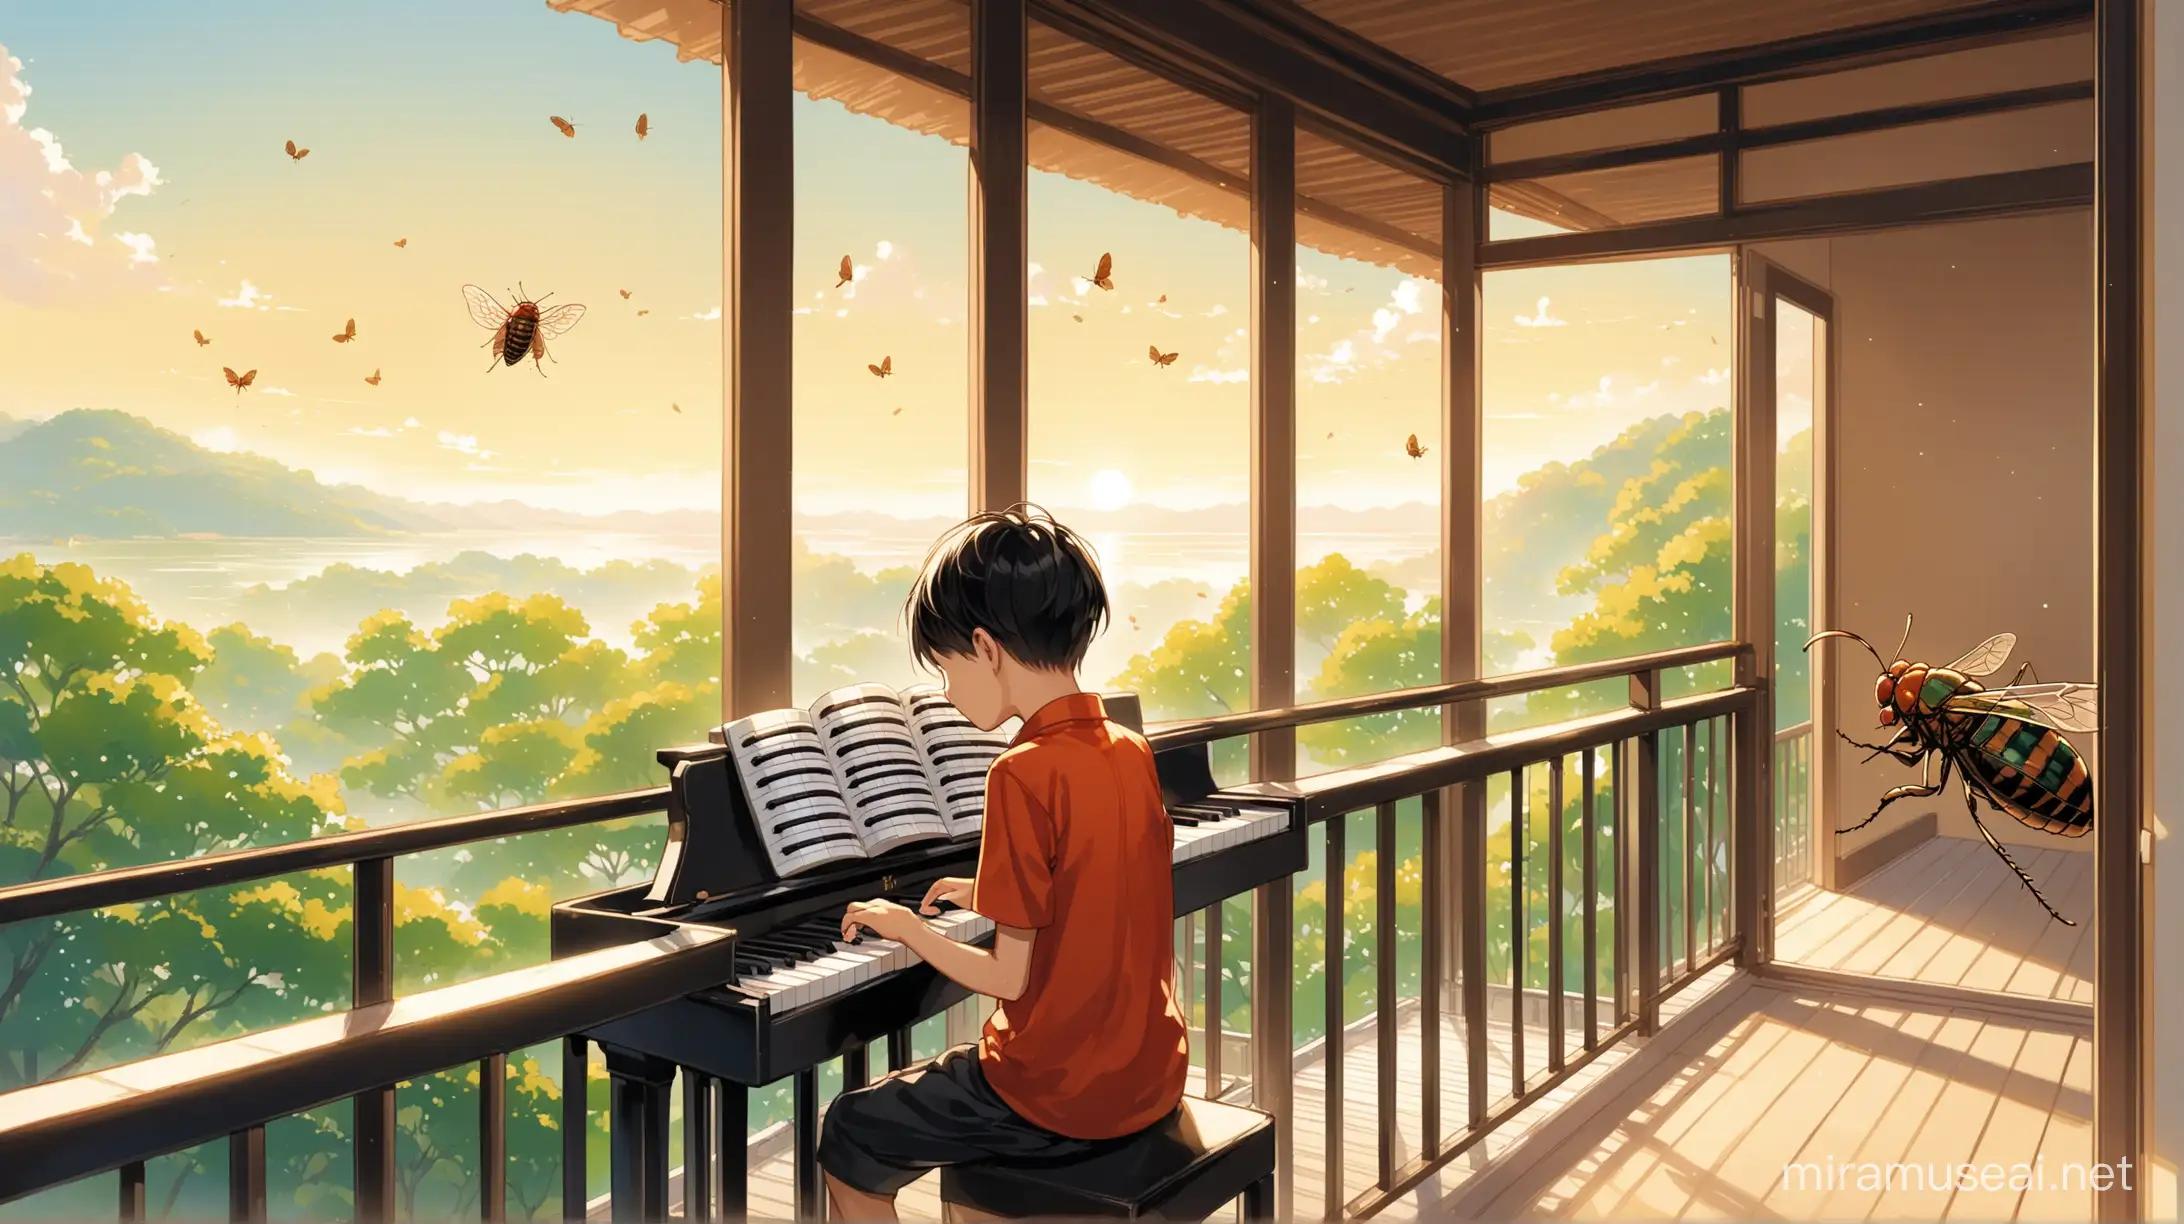 中午的时候，中国男孩在阳台弹琴，一只知了在阳台的栏杆上唱歌